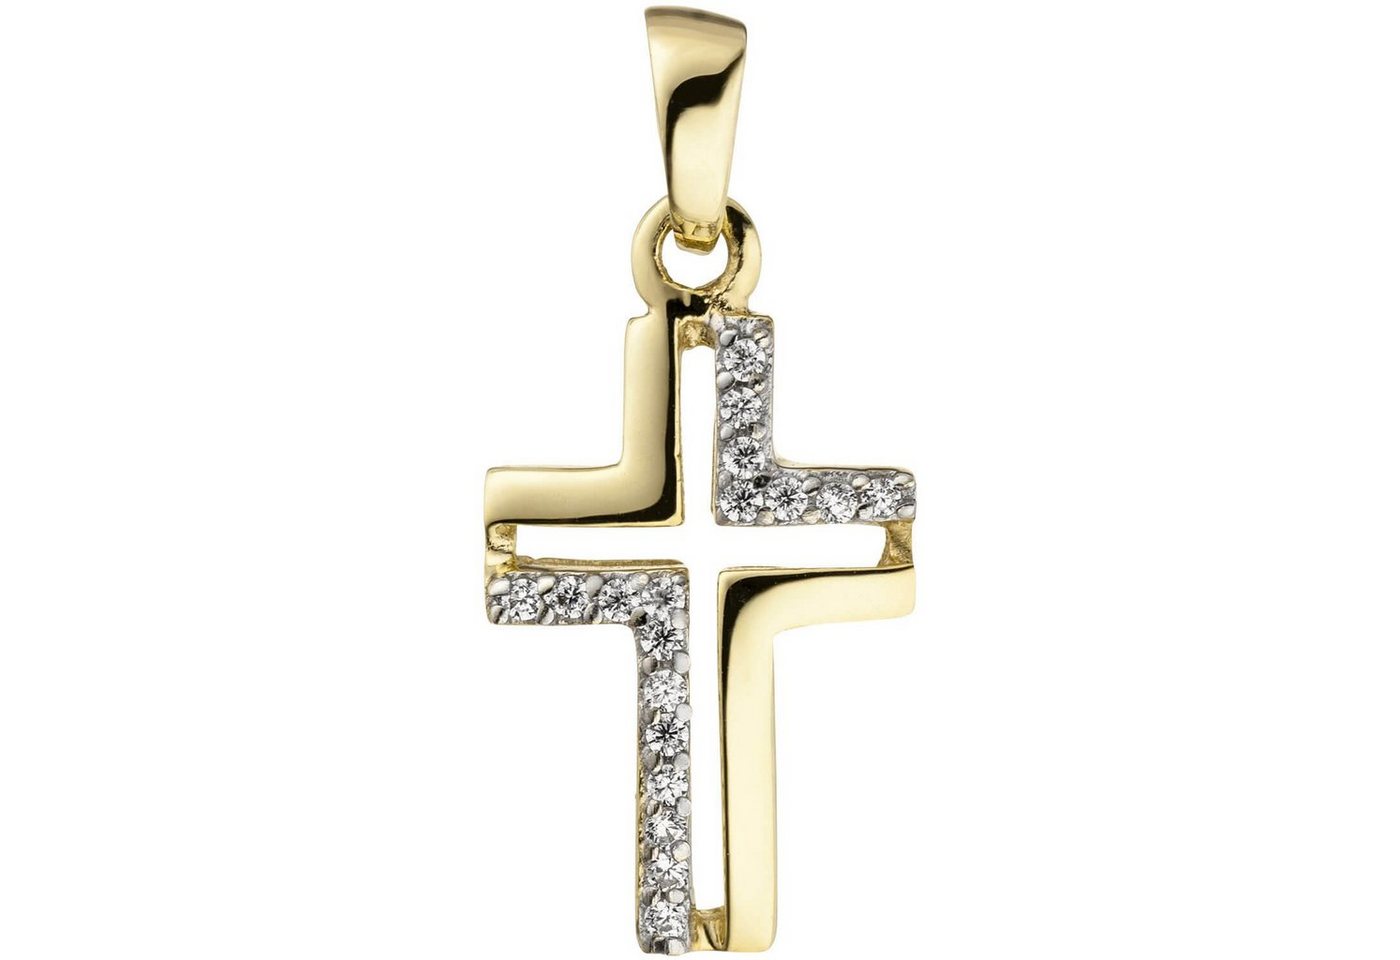 Schmuck Krone Kettenanhänger Anhänger Kreuzausschnitt im Kreuz mit Zirkonia, 375 Gold Gelbgold teilrhodiniert, Gold 375 von Schmuck Krone